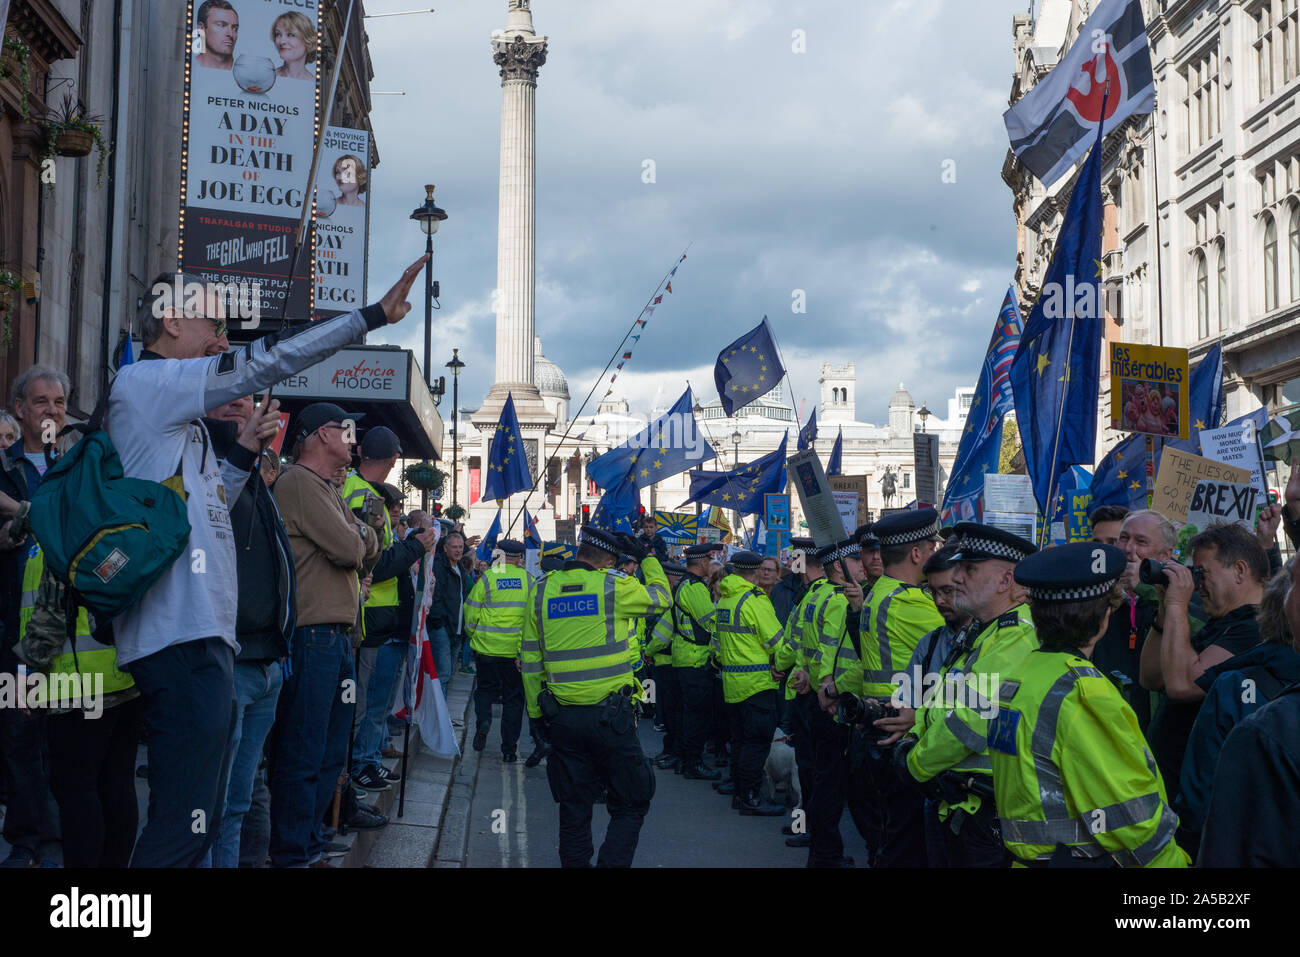 Londres, Angleterre, Royaume-Uni. 19 octobre 2019. Les manifestants marchons à travers le centre de Londres aujourd'hui à exiger que le public a donné un dernier mot sur Brexit. La marche a été organisée par le vote du peuple 'Campagne', qui sont pour une dernière campagne référendum sur un Brexit s'occuper d'être soumis à un vote public. La foule s'entendre les discours des politiciens et des célébrités à l'extérieur du Parlement. Il y a eu une petite manifestation contre la marche par des gens qui ont voté pour partir. Ils demandent l'anti brexit manifestants Nazis. Andrew Steven Graham/Alamy Live News Banque D'Images